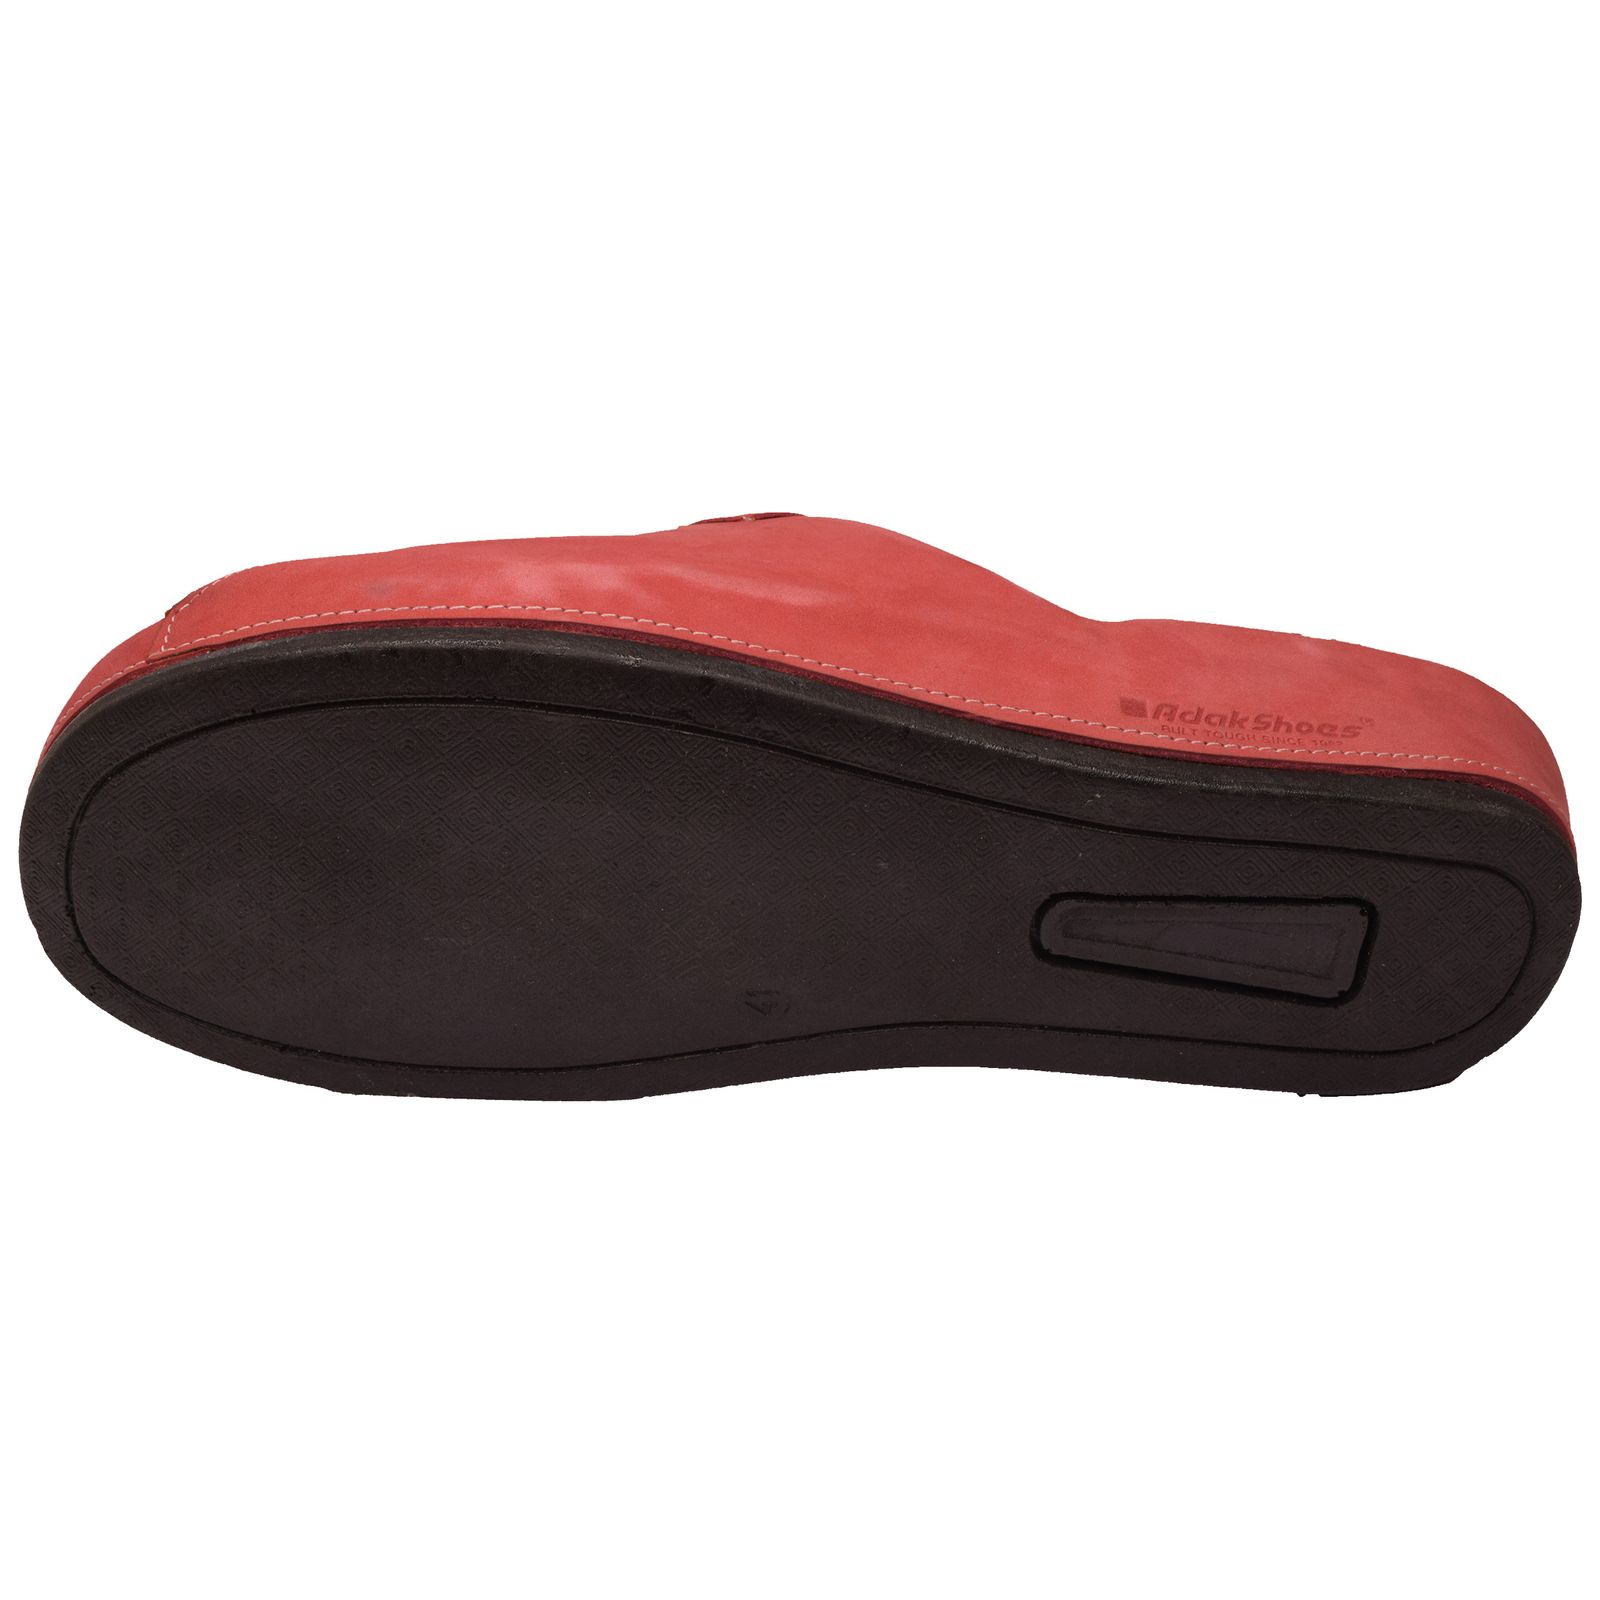 دمپایی زنانه کفش آداک مدل ویکتور 4 رنگ قرمز -  - 2